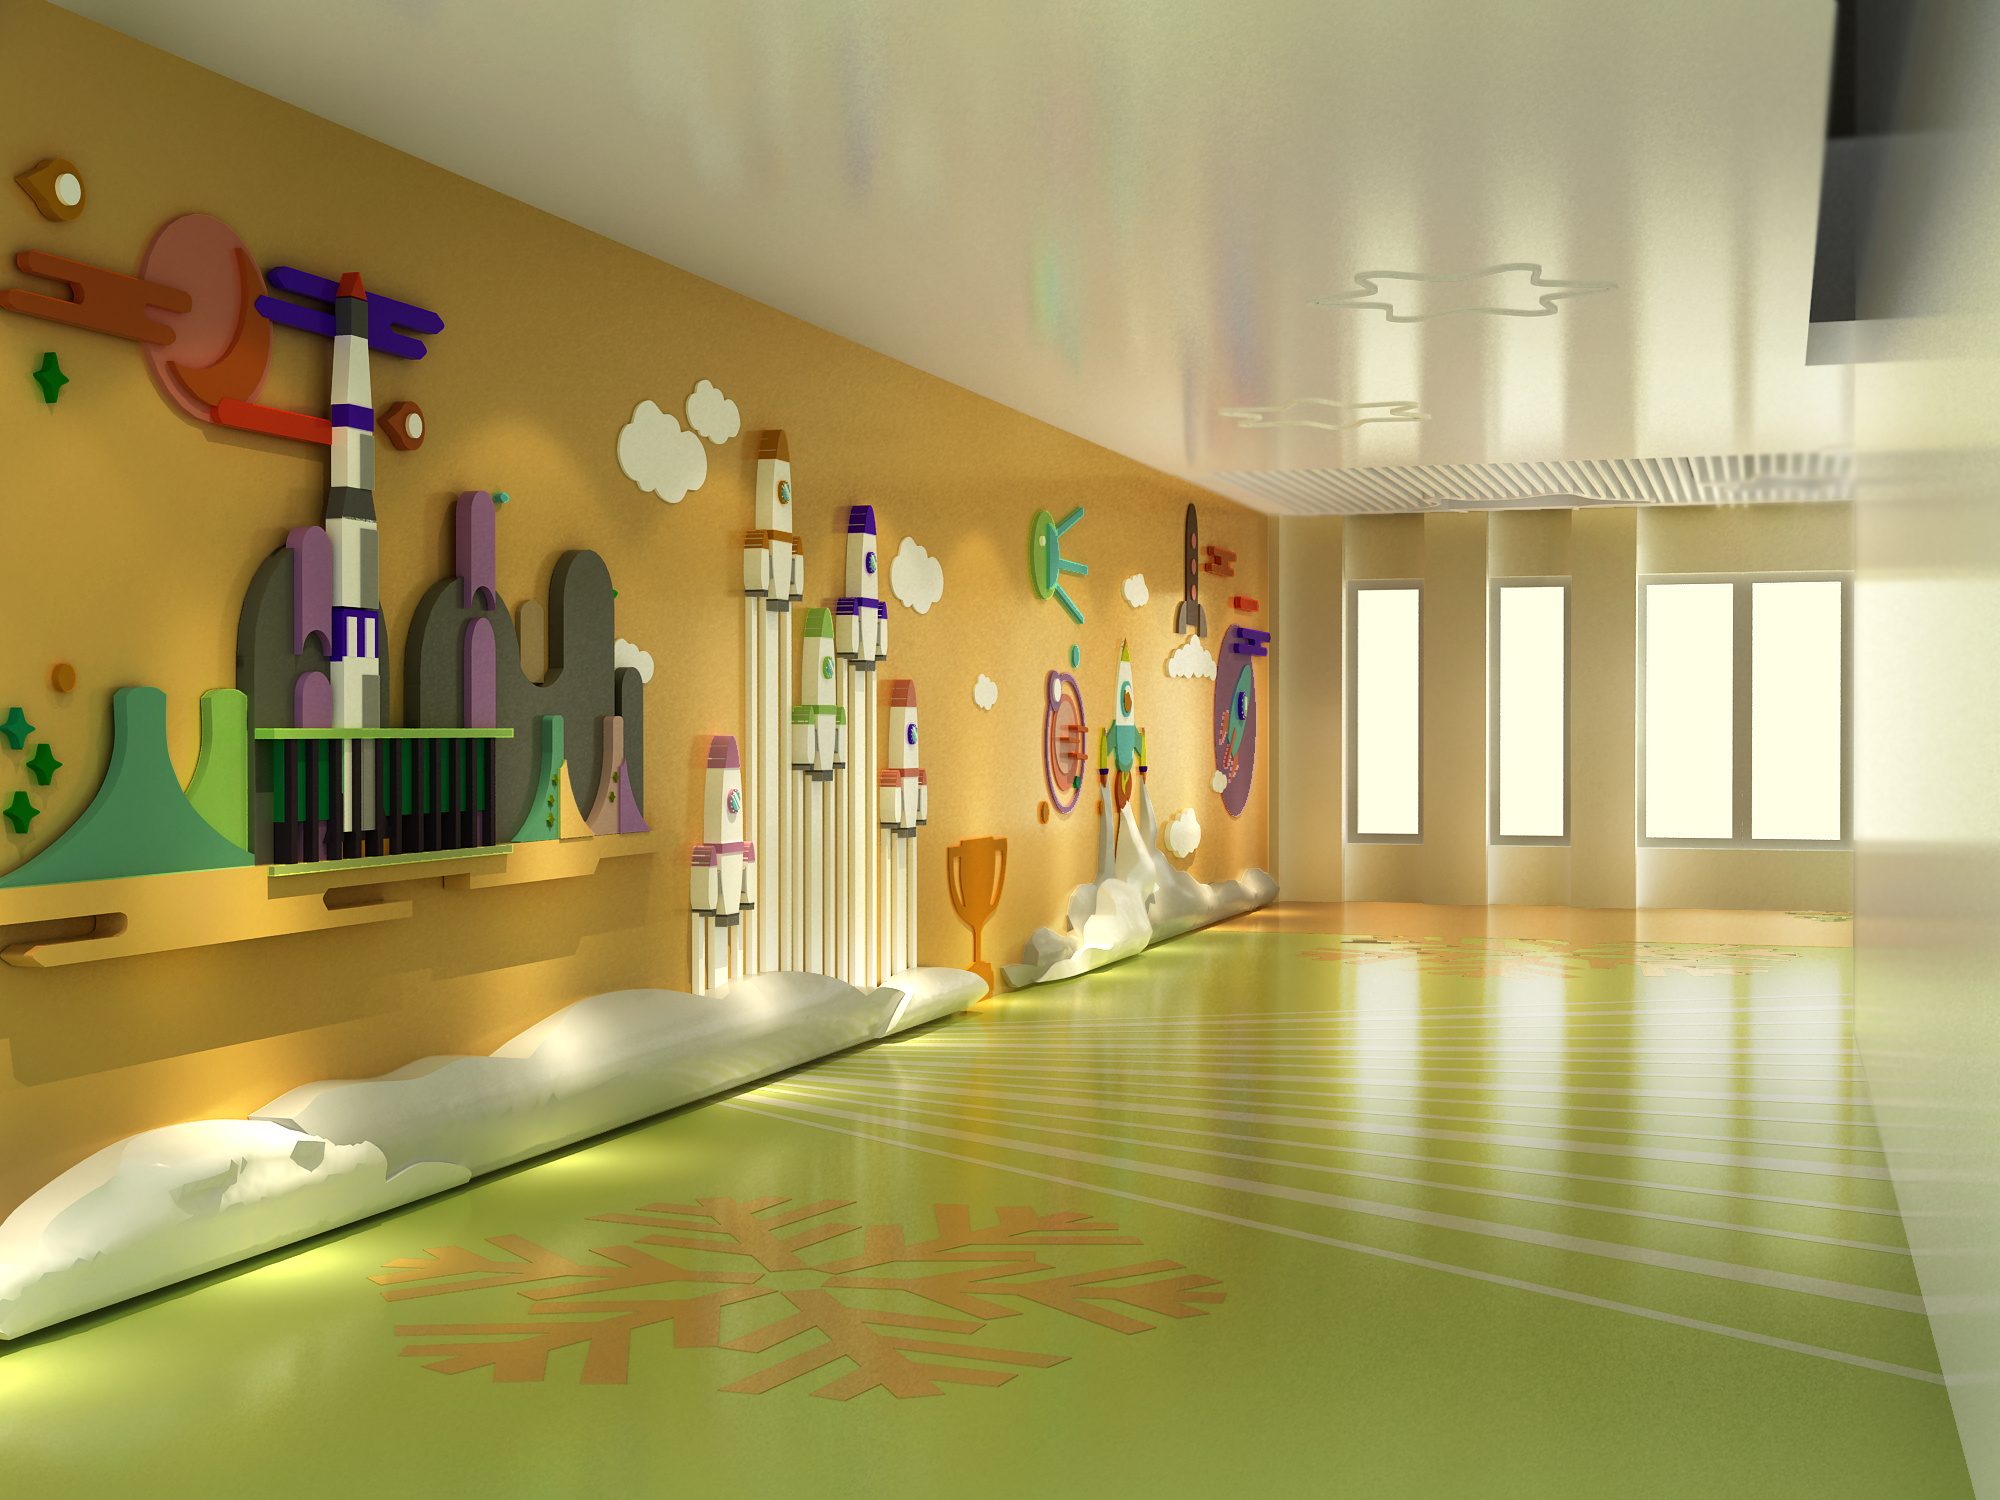 【幼儿园大厅3D模型】_现代黄幼儿园大厅3d模型下载_ID549558_免费3Dmax模型库 - 青模3d模型网